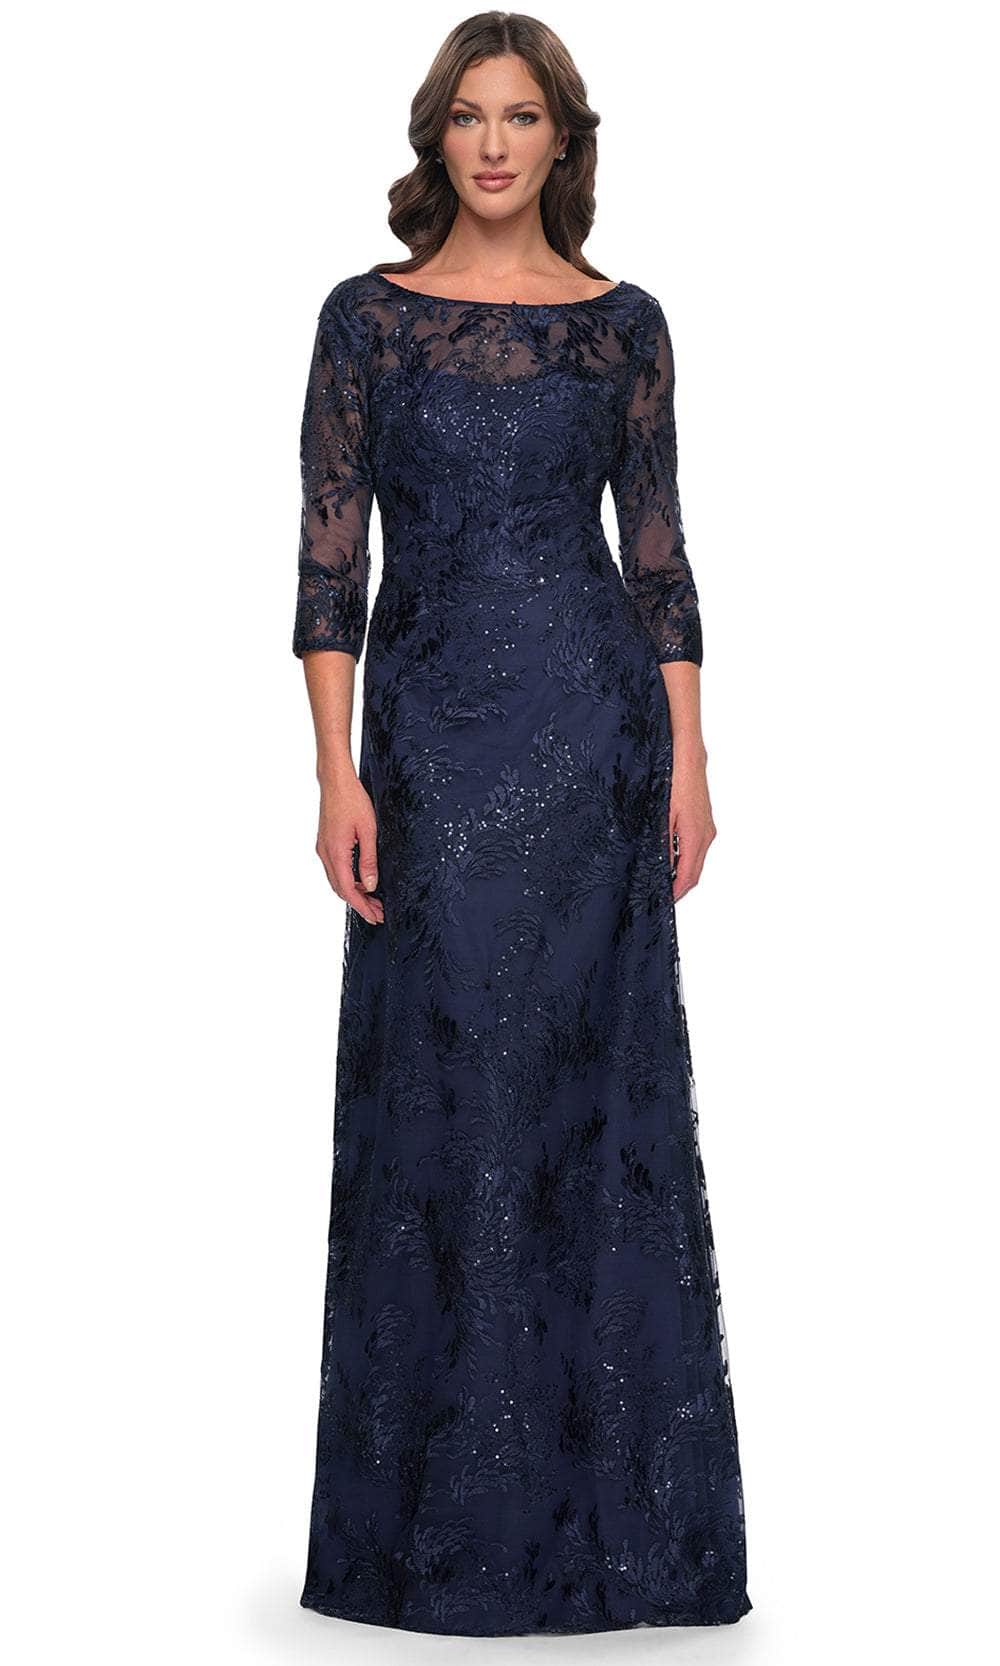 La Femme 30835 - Embroidered Bateau Formal Dress Evening Dresses 4 / Navy